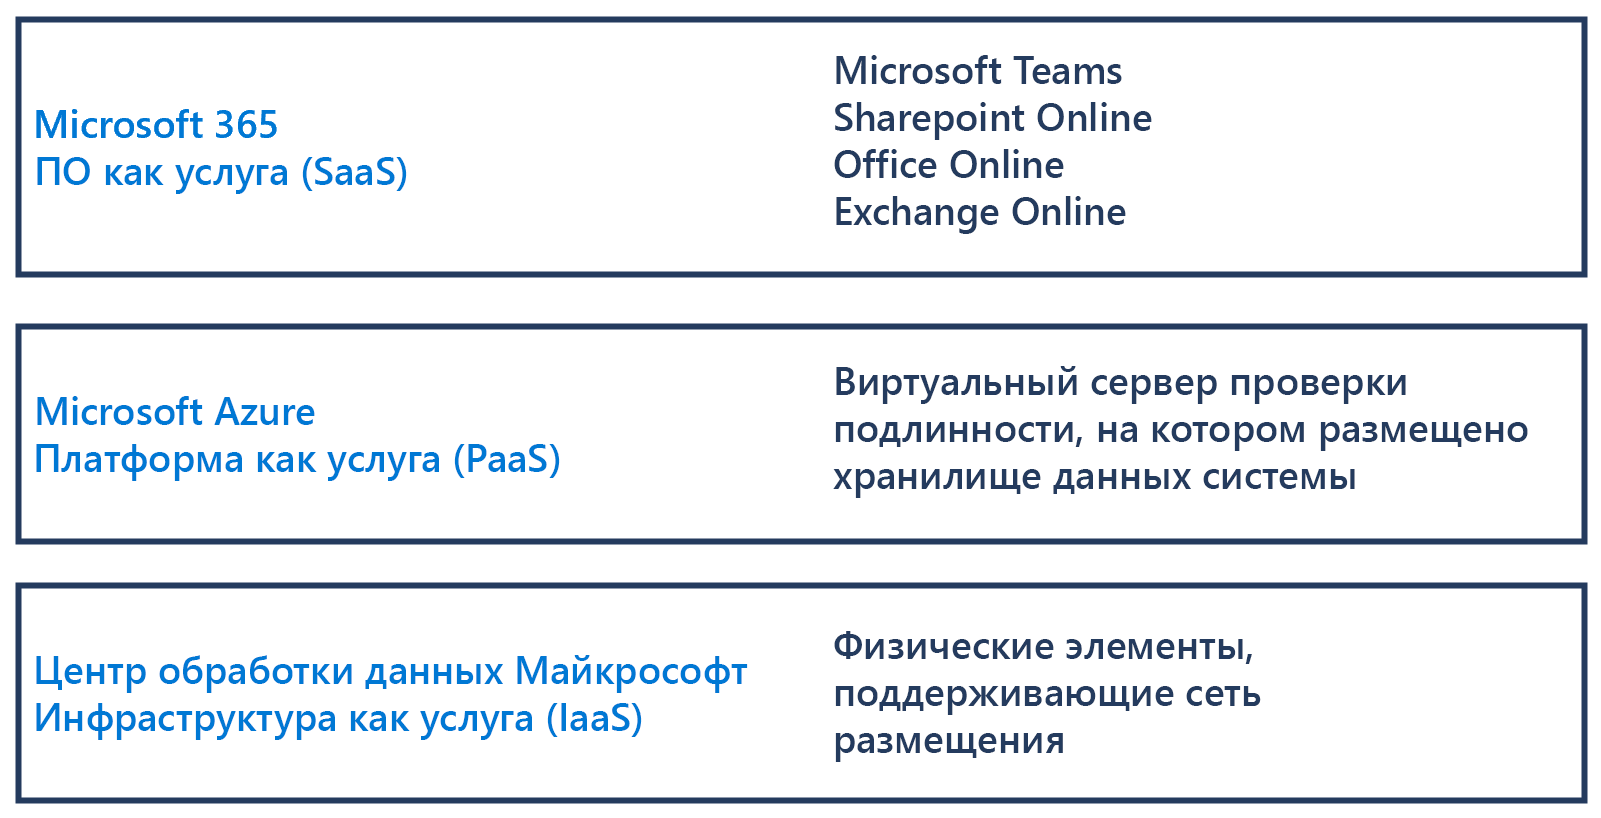 Схема, показывающая различия между программным обеспечением Microsoft 3 65 как услугой, платформой Microsoft Azure как услугой и инфраструктурой центров обработки данных Microsoft как услугой.